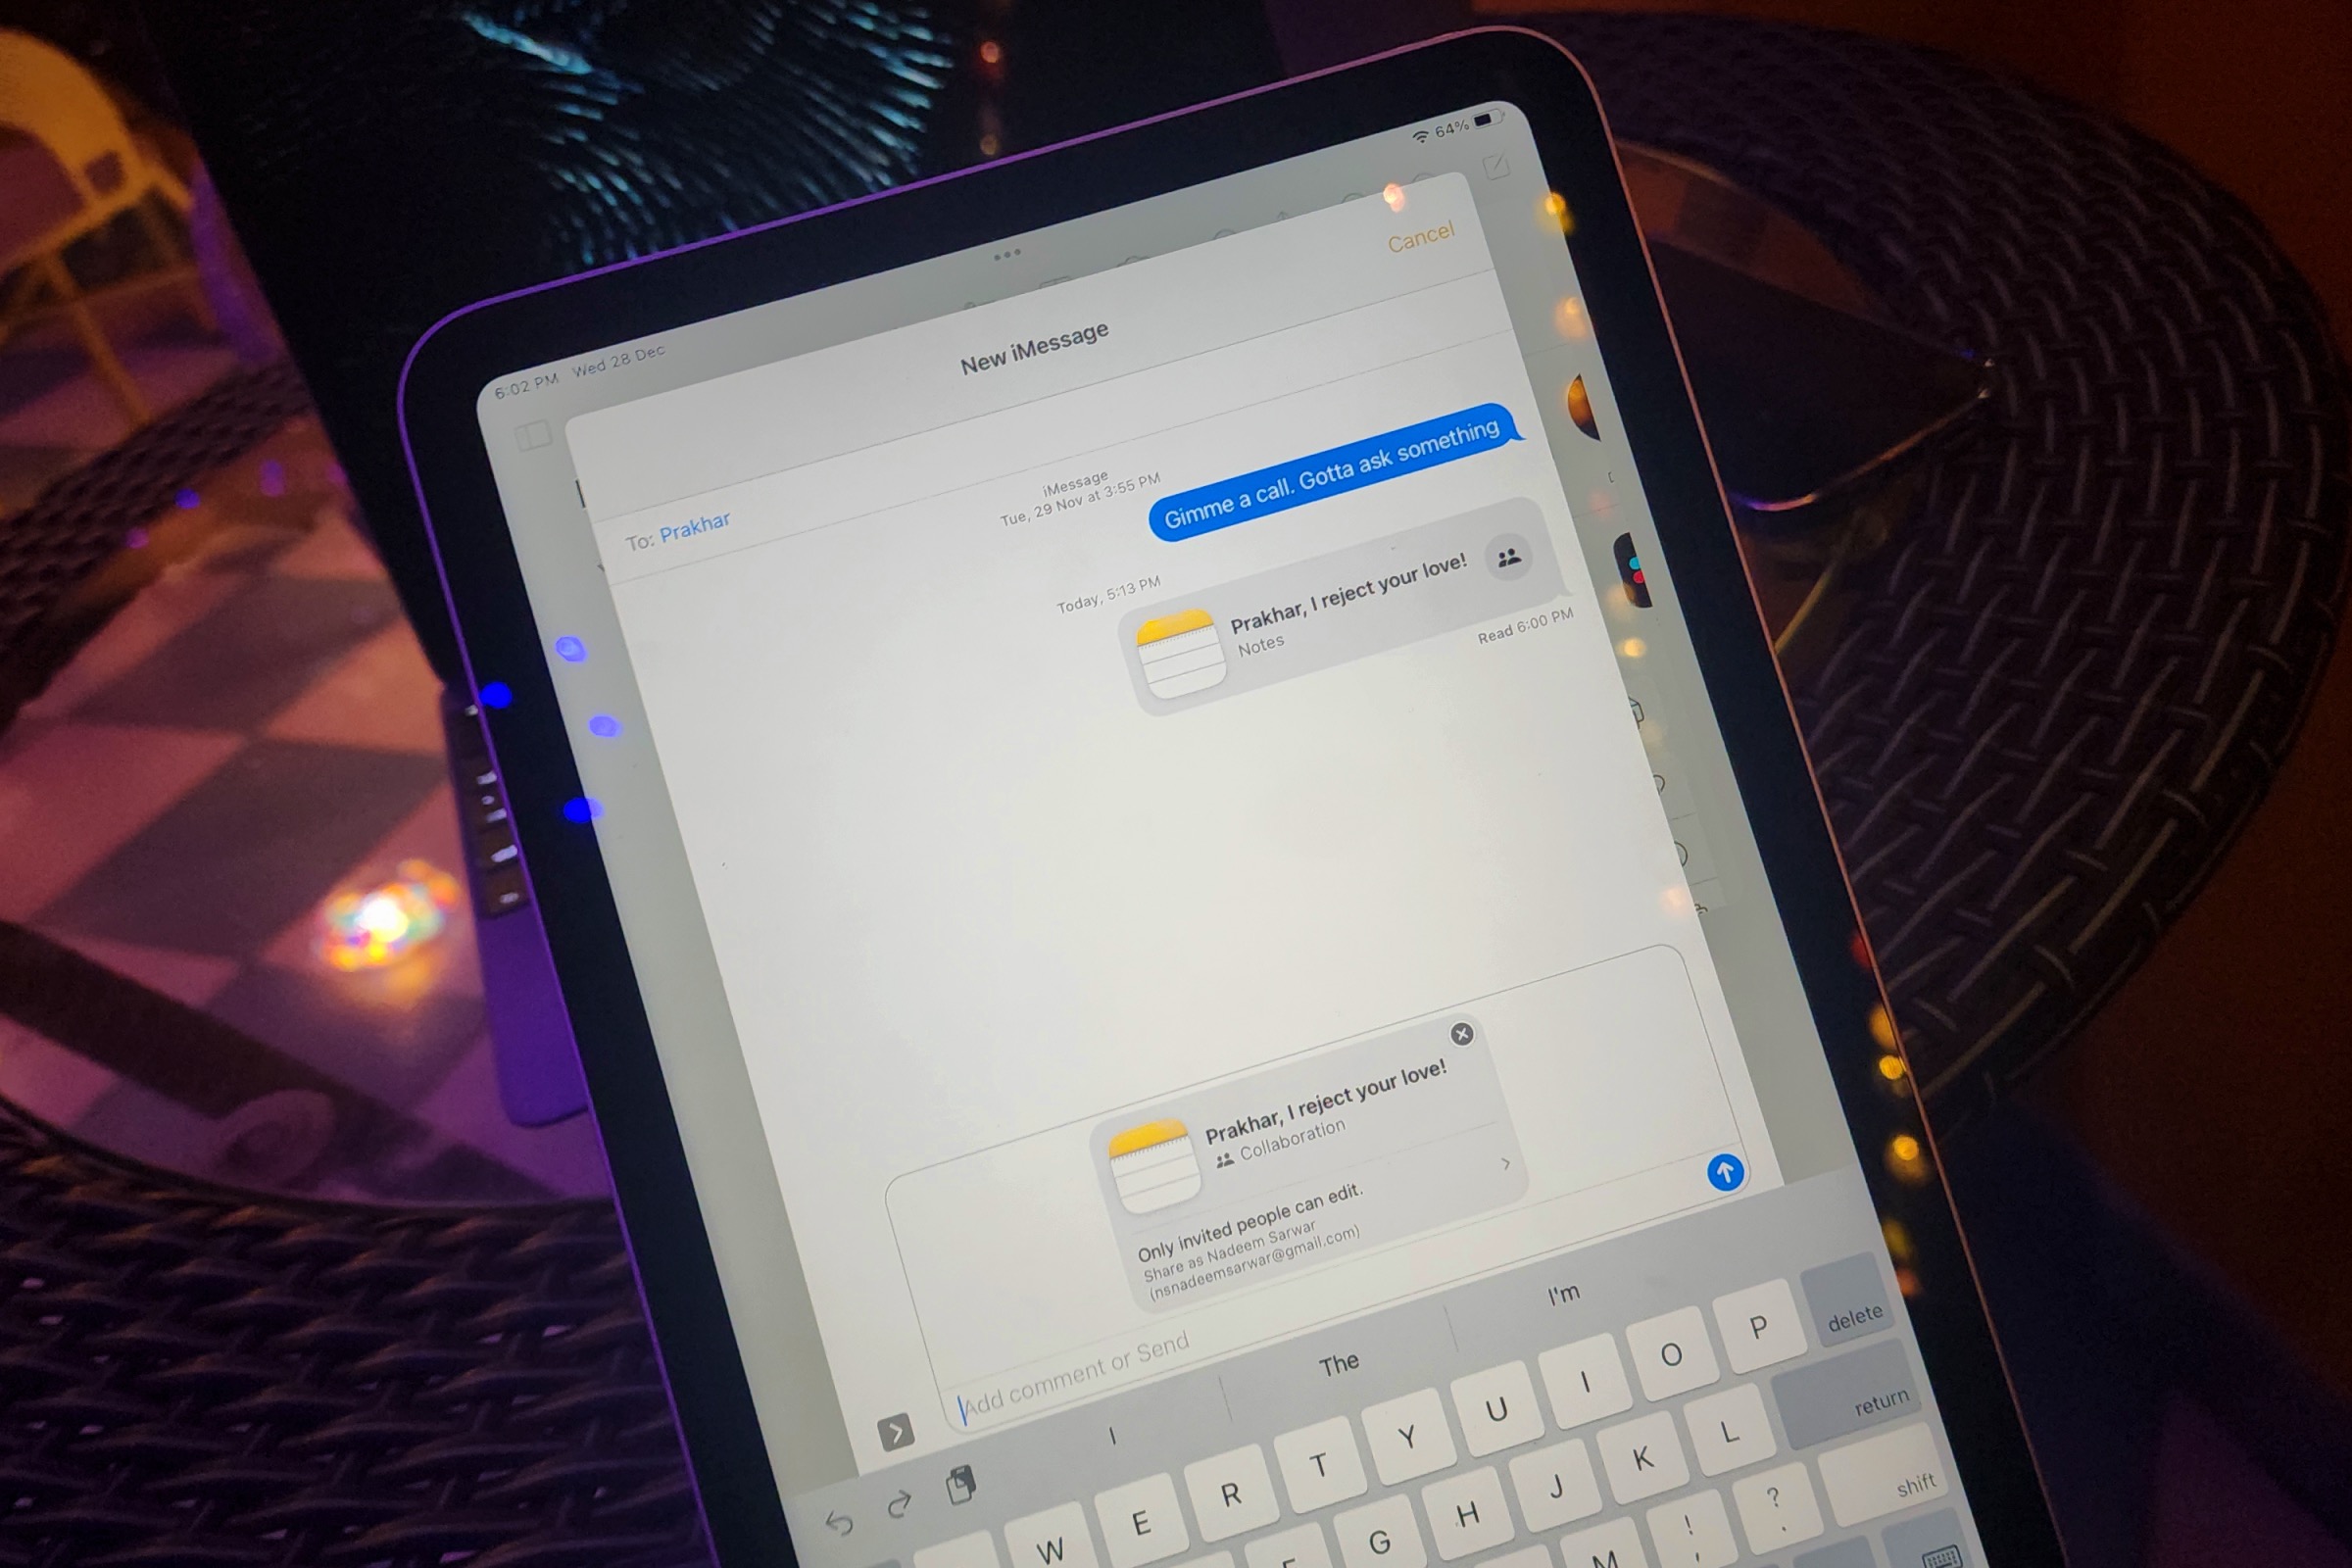 Solicitação do iMessage para compartilhar um convite de colaboração no iPad.